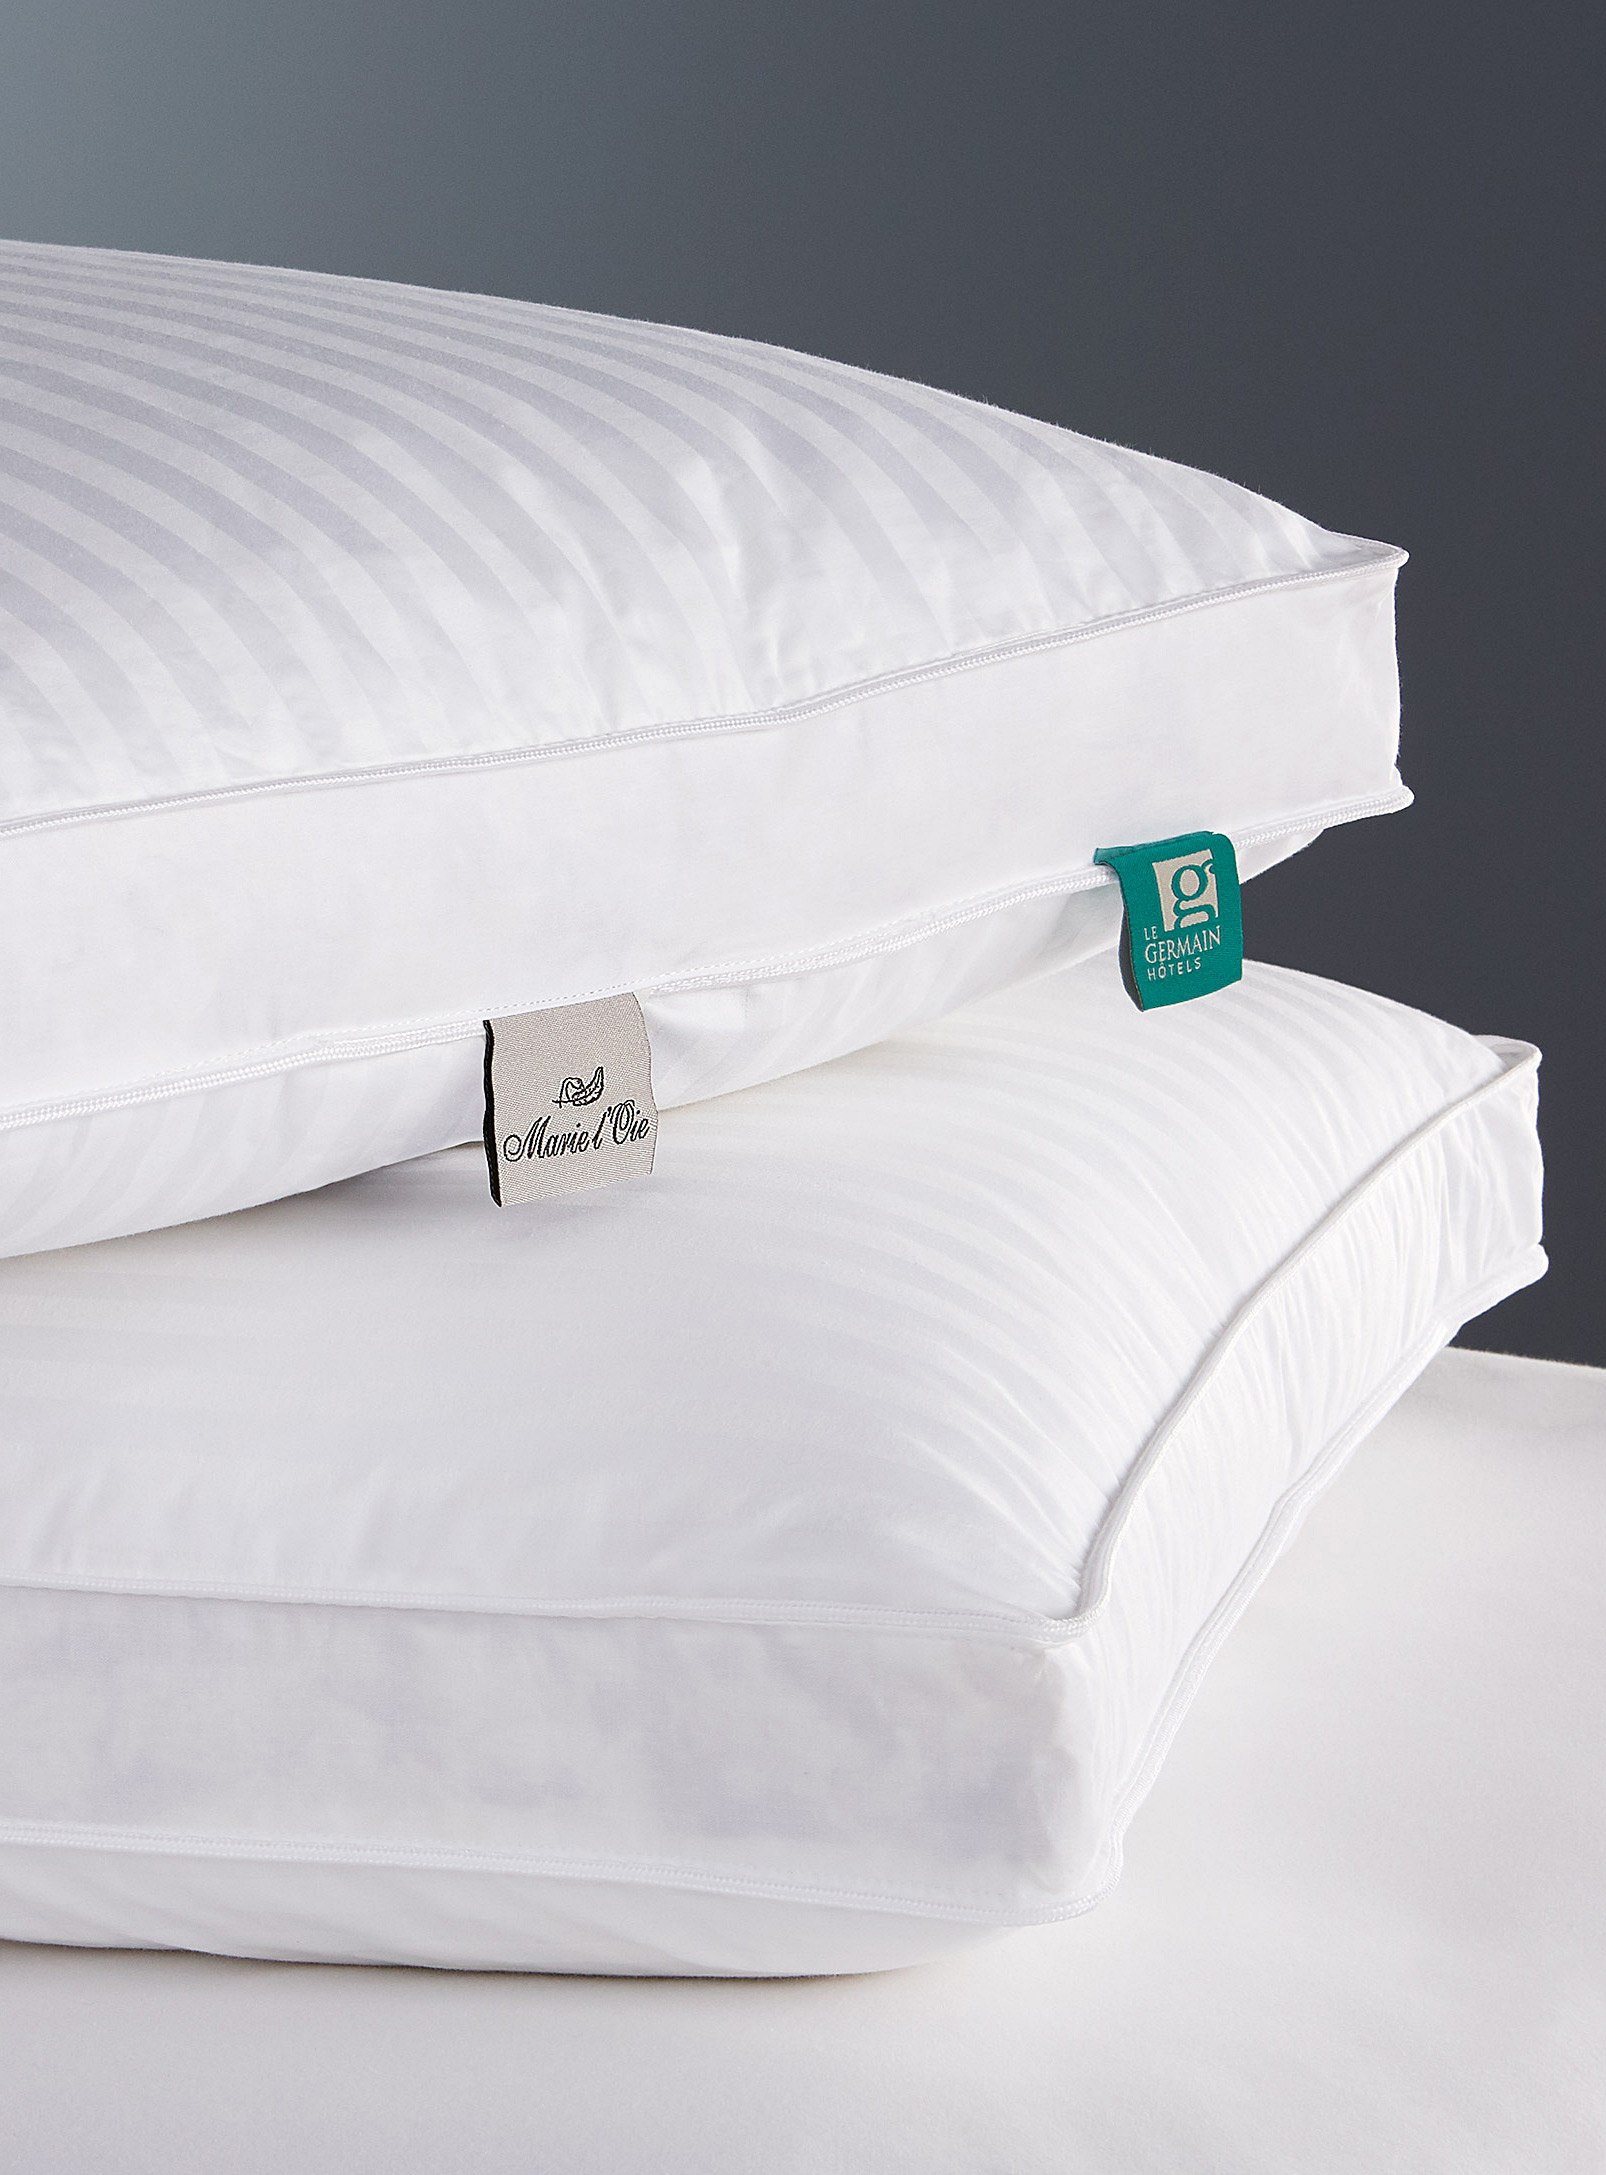 Hôtels Le Germain - Duveteuse pillow Semi-firm support